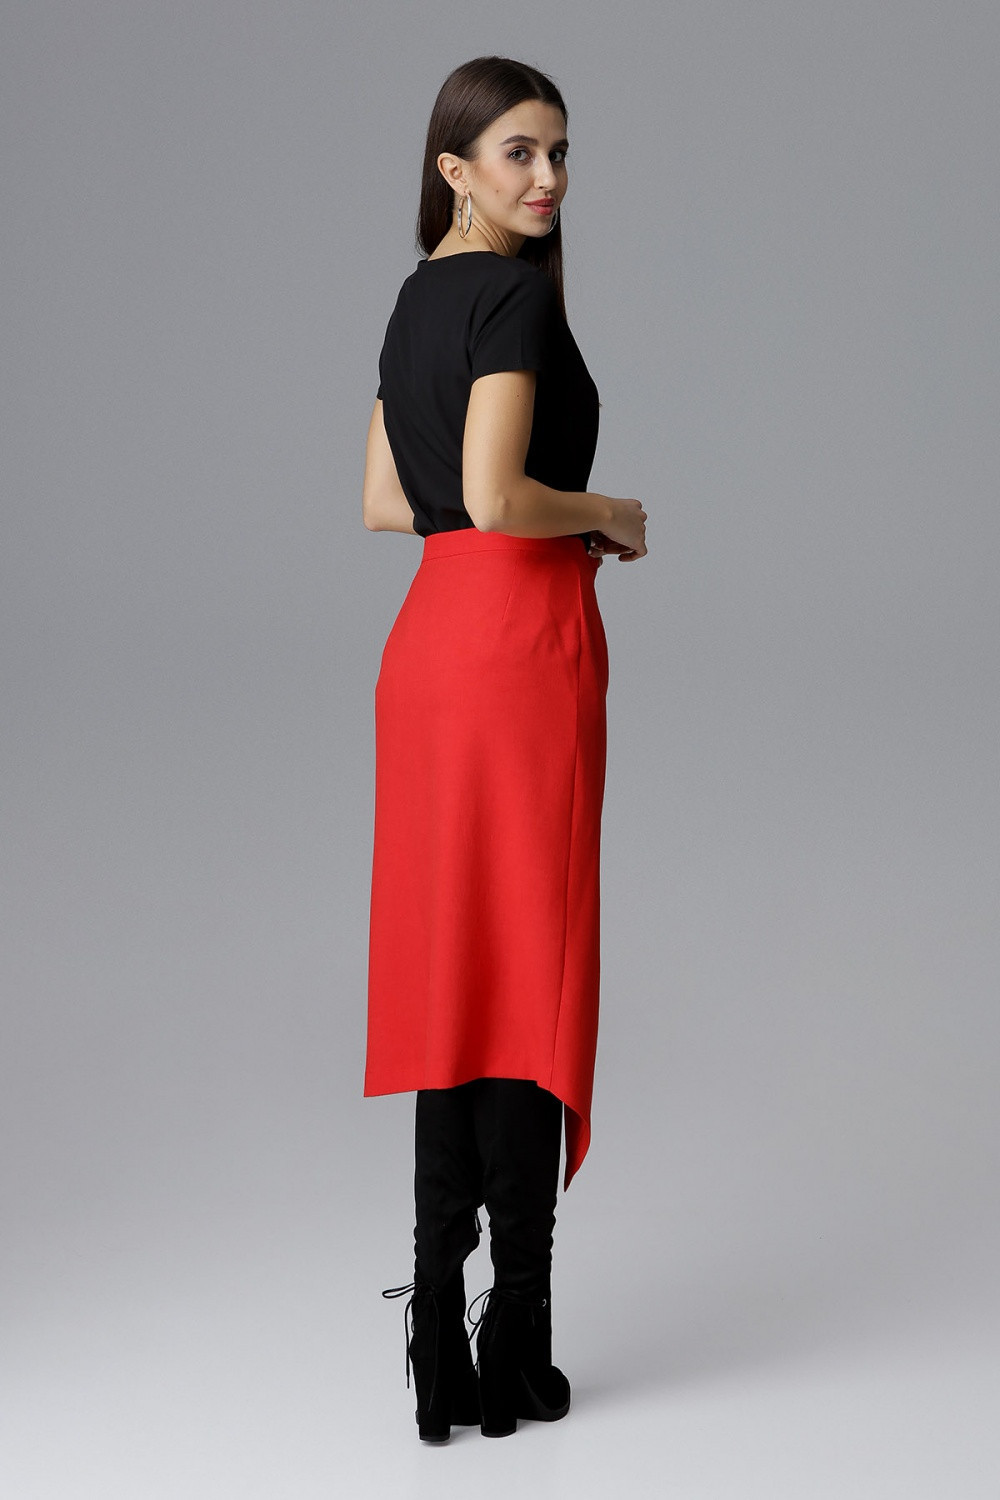 Dámská sukně model 15089615 červená S36 - Figl